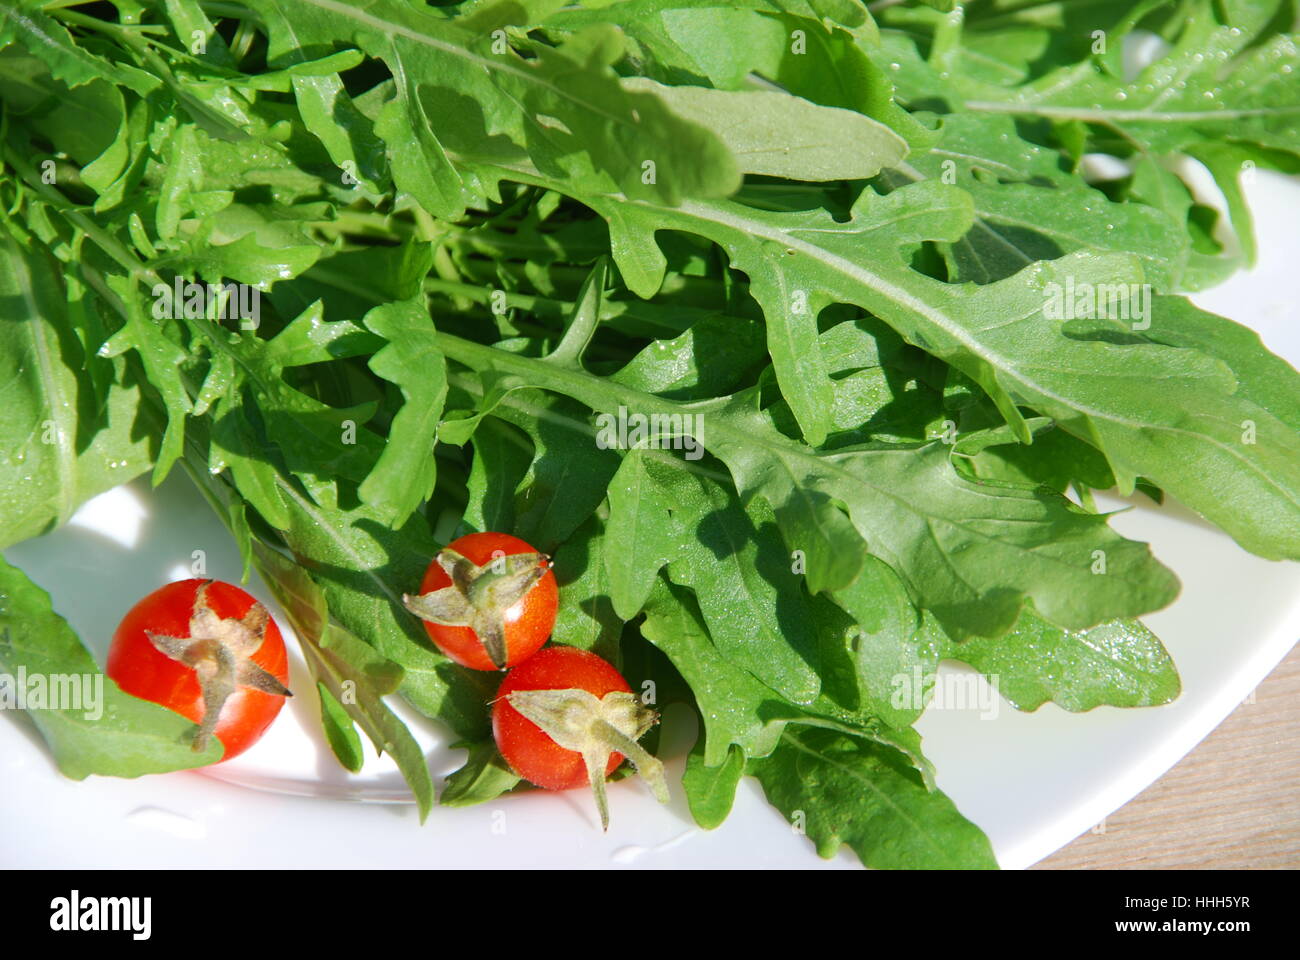 Salat, Lebensmittel, Nahrungsmittel, Blatt, Gewürz, Garten, Pflanze, grün,  Holz, Blätter Stockfotografie - Alamy